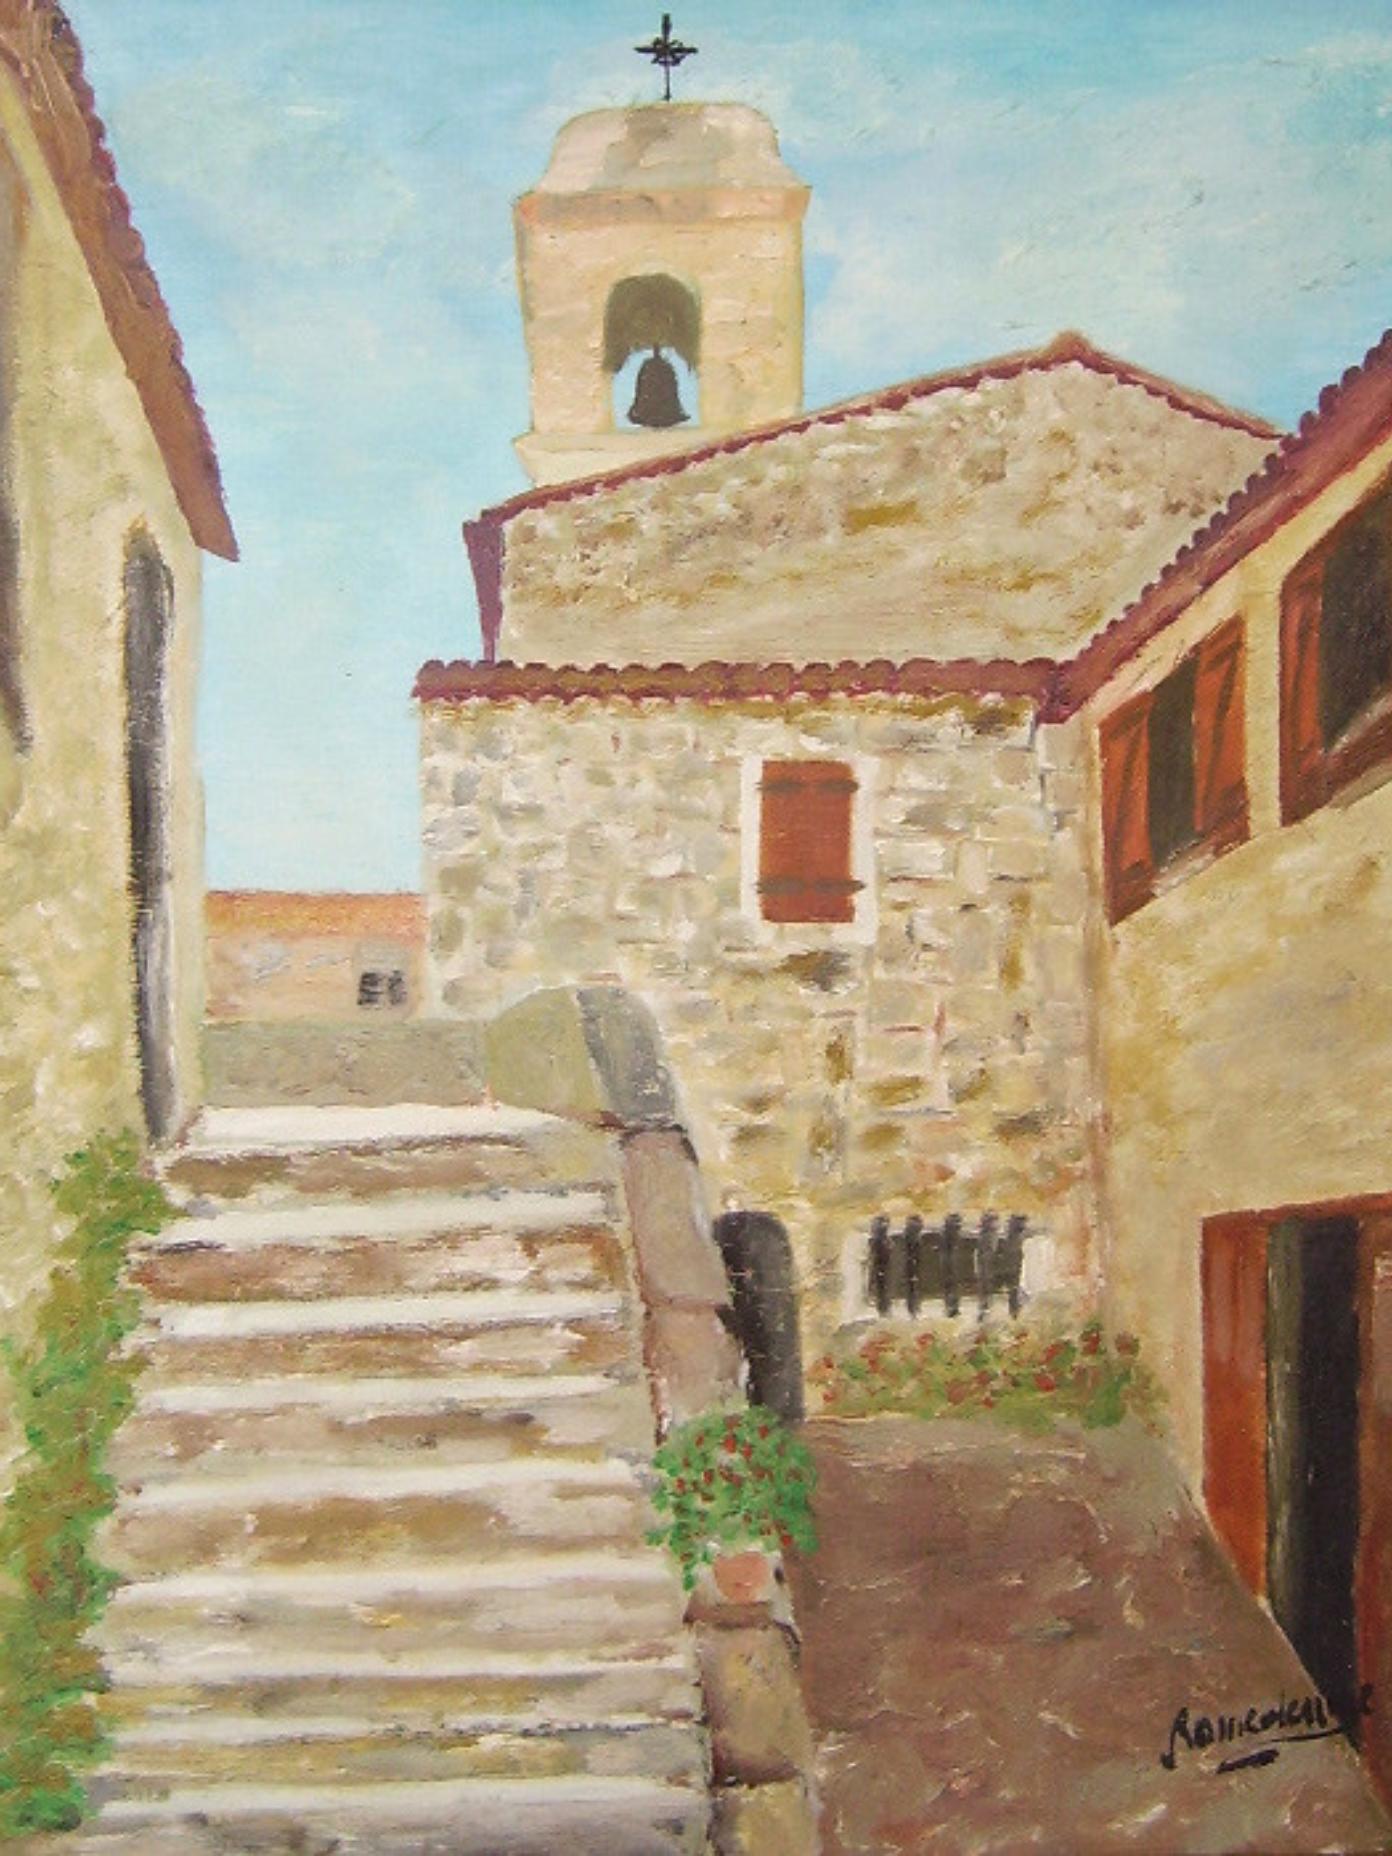 Village Provençal